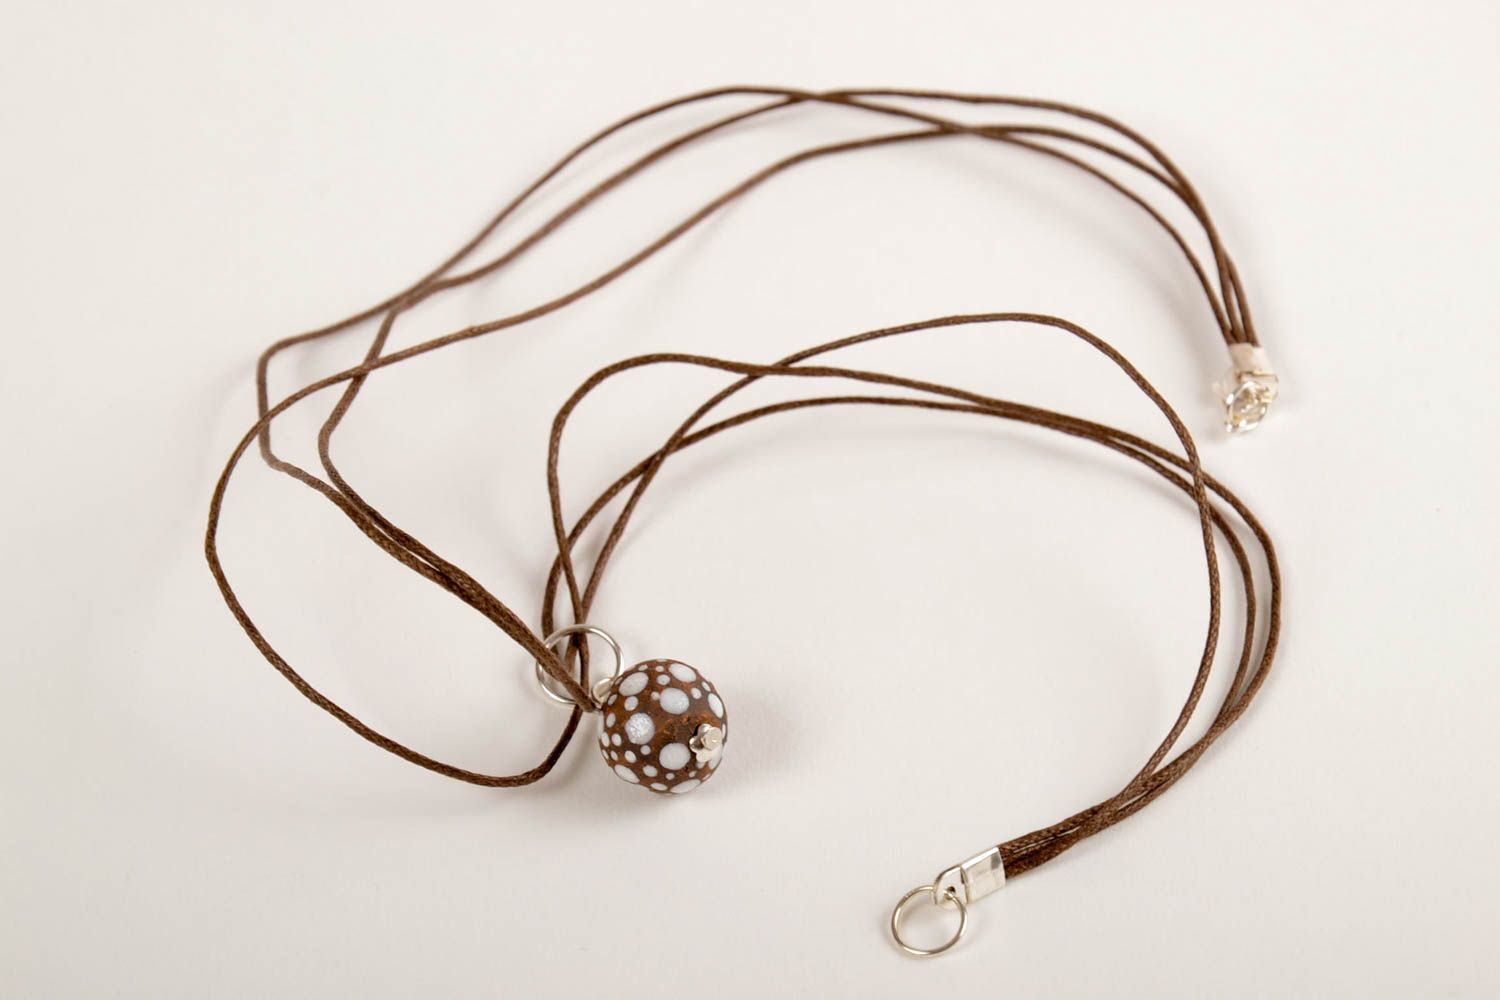 Stylish pendant on lace ceramic handmade pendant female accessory gift photo 5